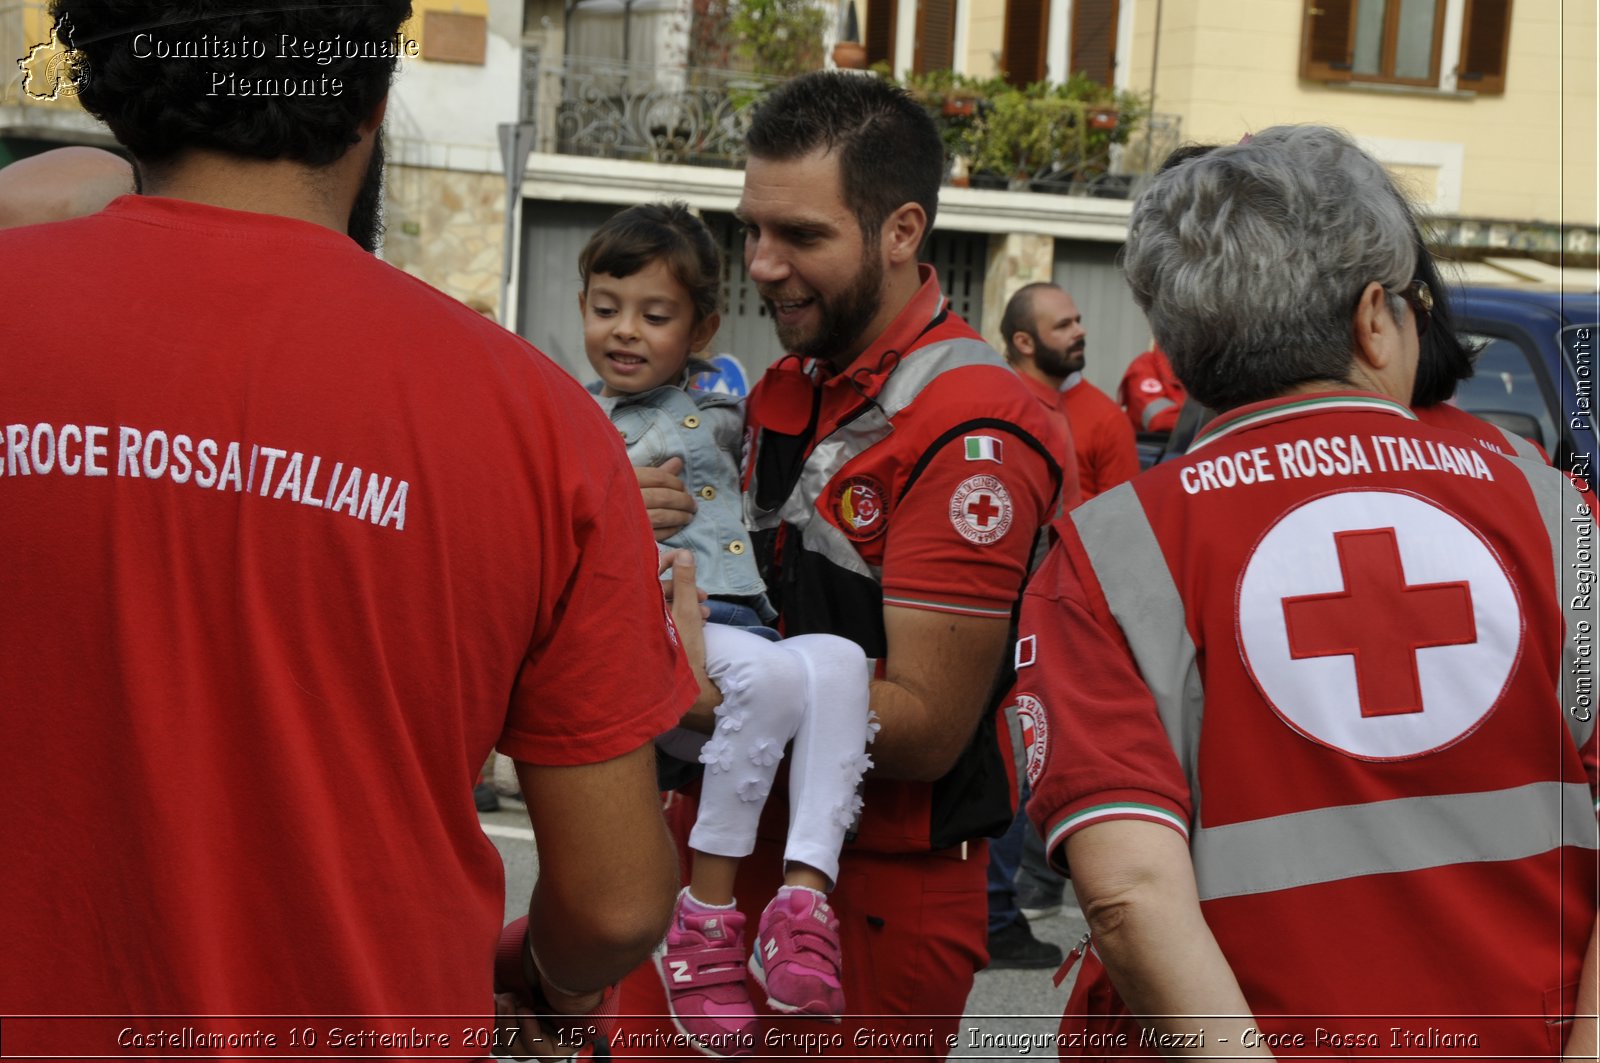 Castellamonte 10 Settembre 2017 - 15 Anniversario Gruppo Giovani e Inaugurazione Mezzi - Croce Rossa Italiana- Comitato Regionale del Piemonte